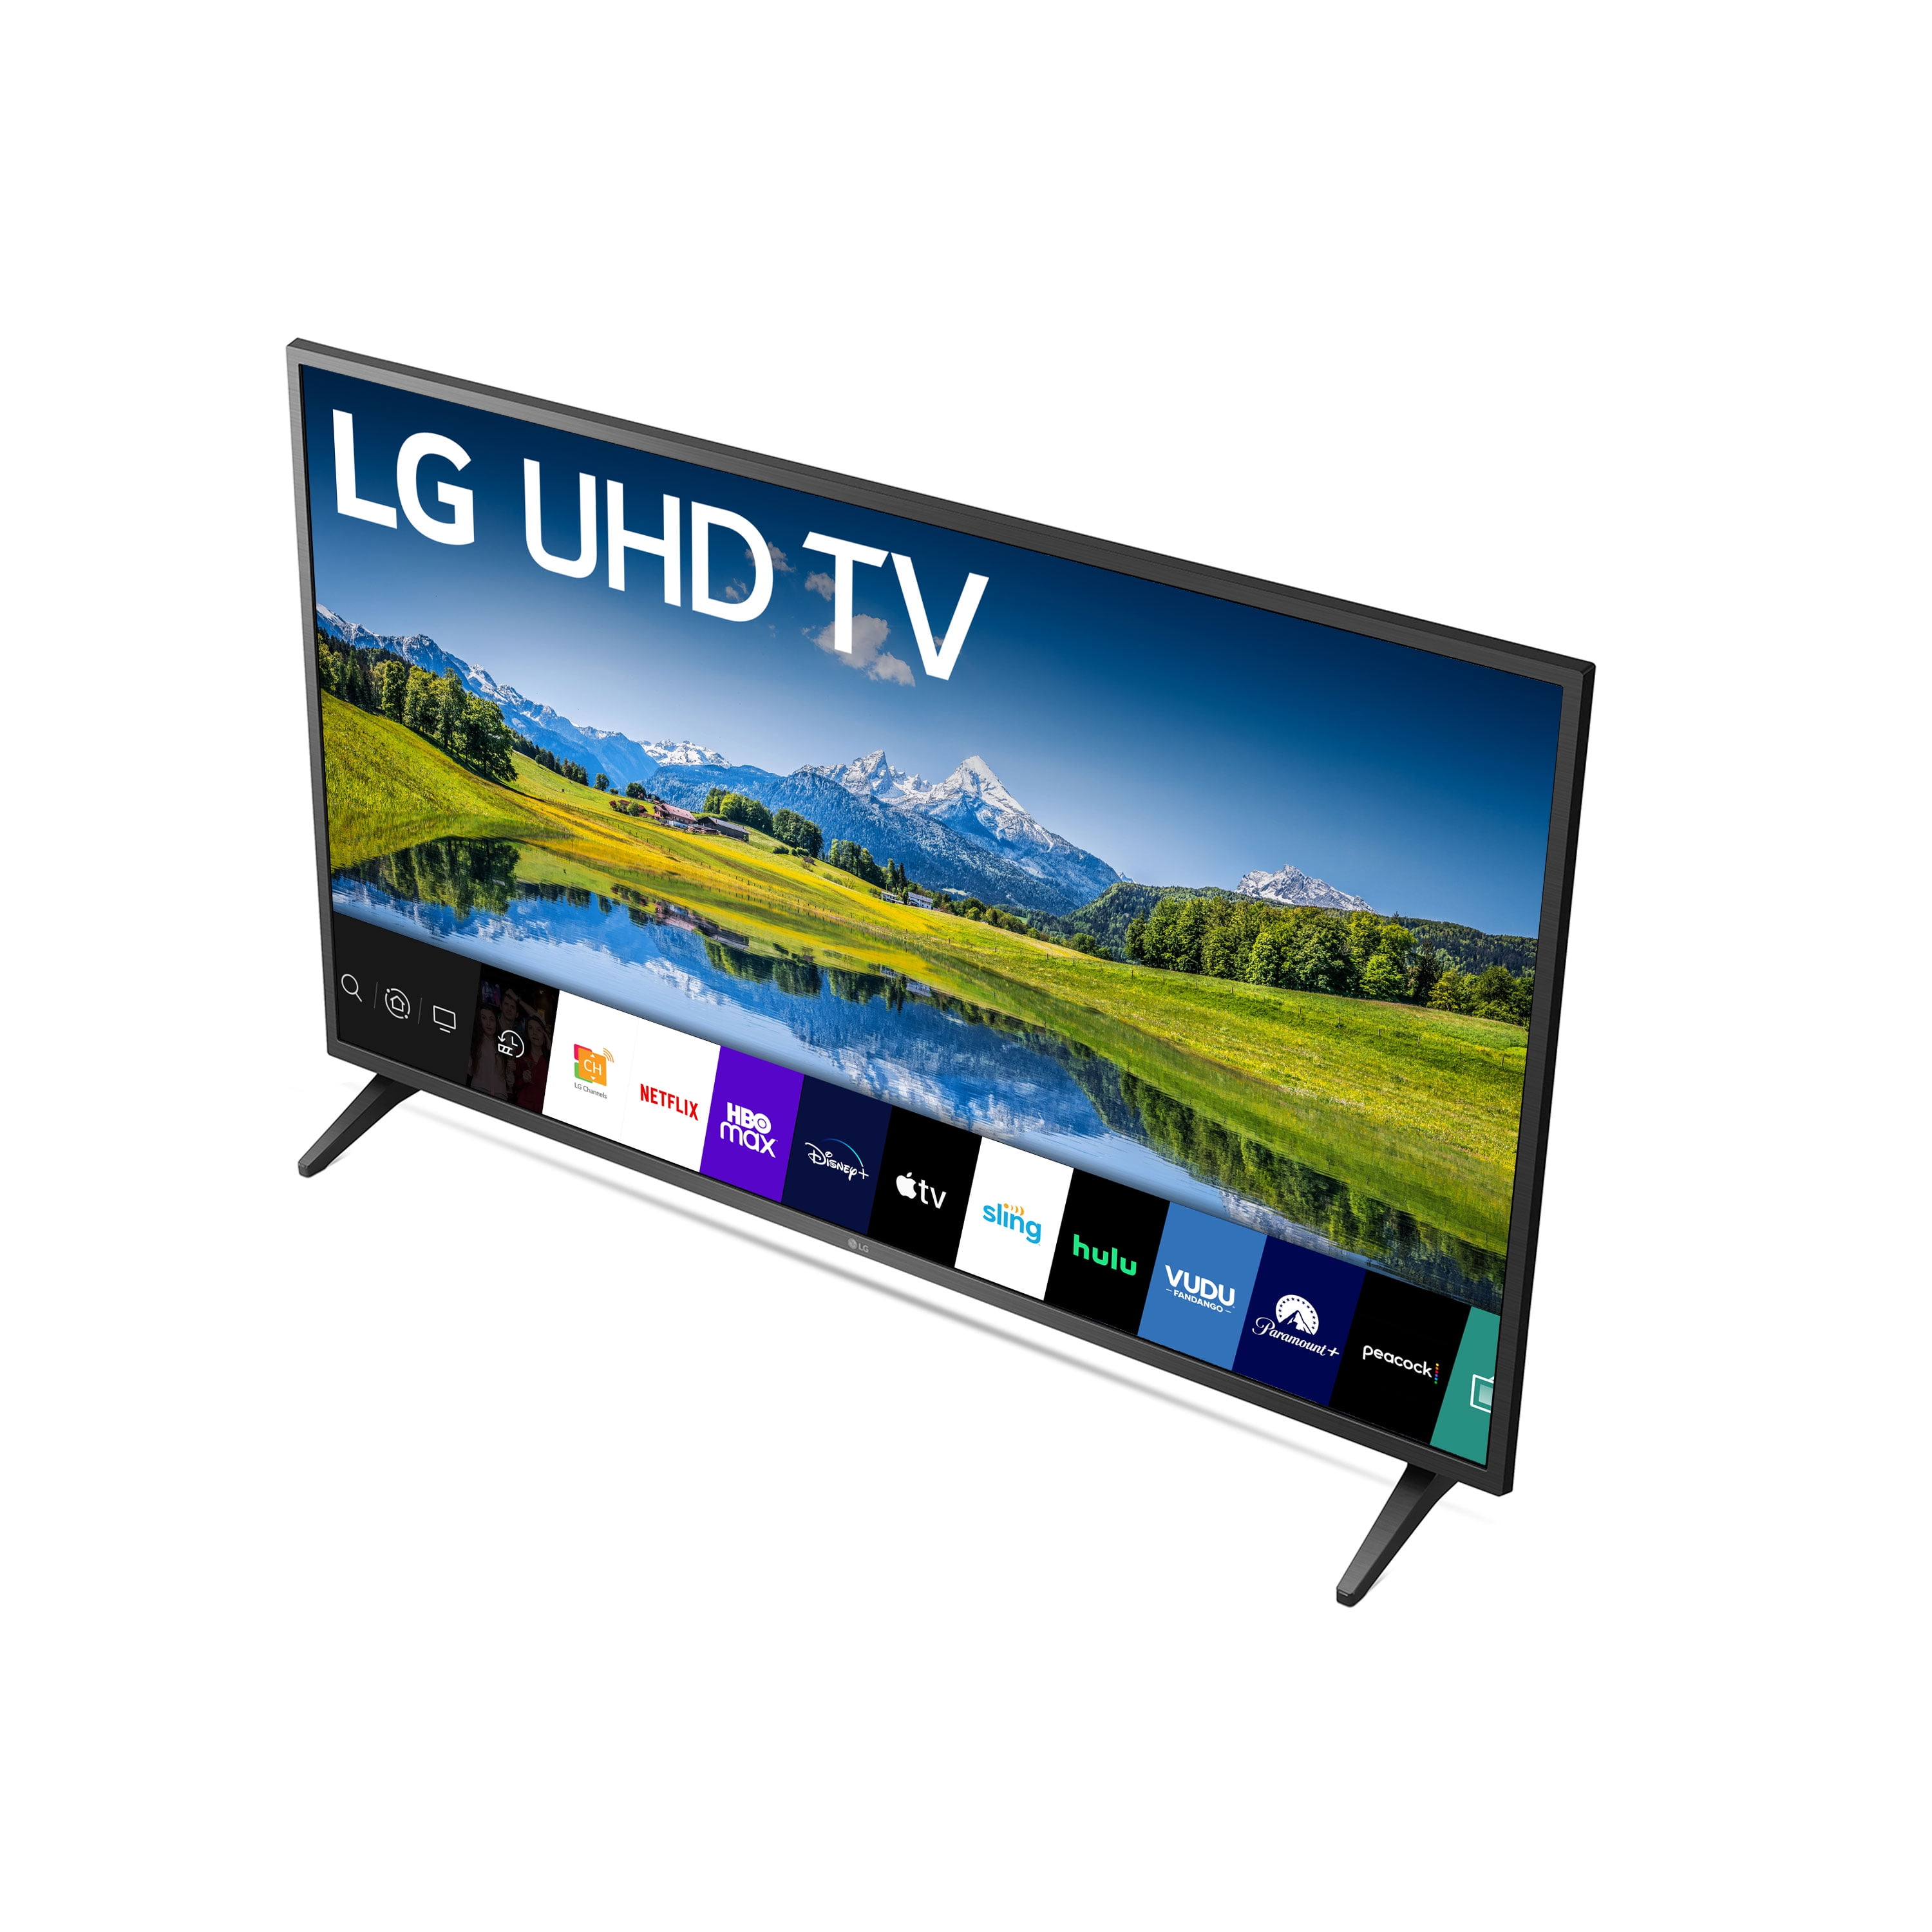 LG Class 4K (2160p) Smart LED TV (55UN6955ZUF)